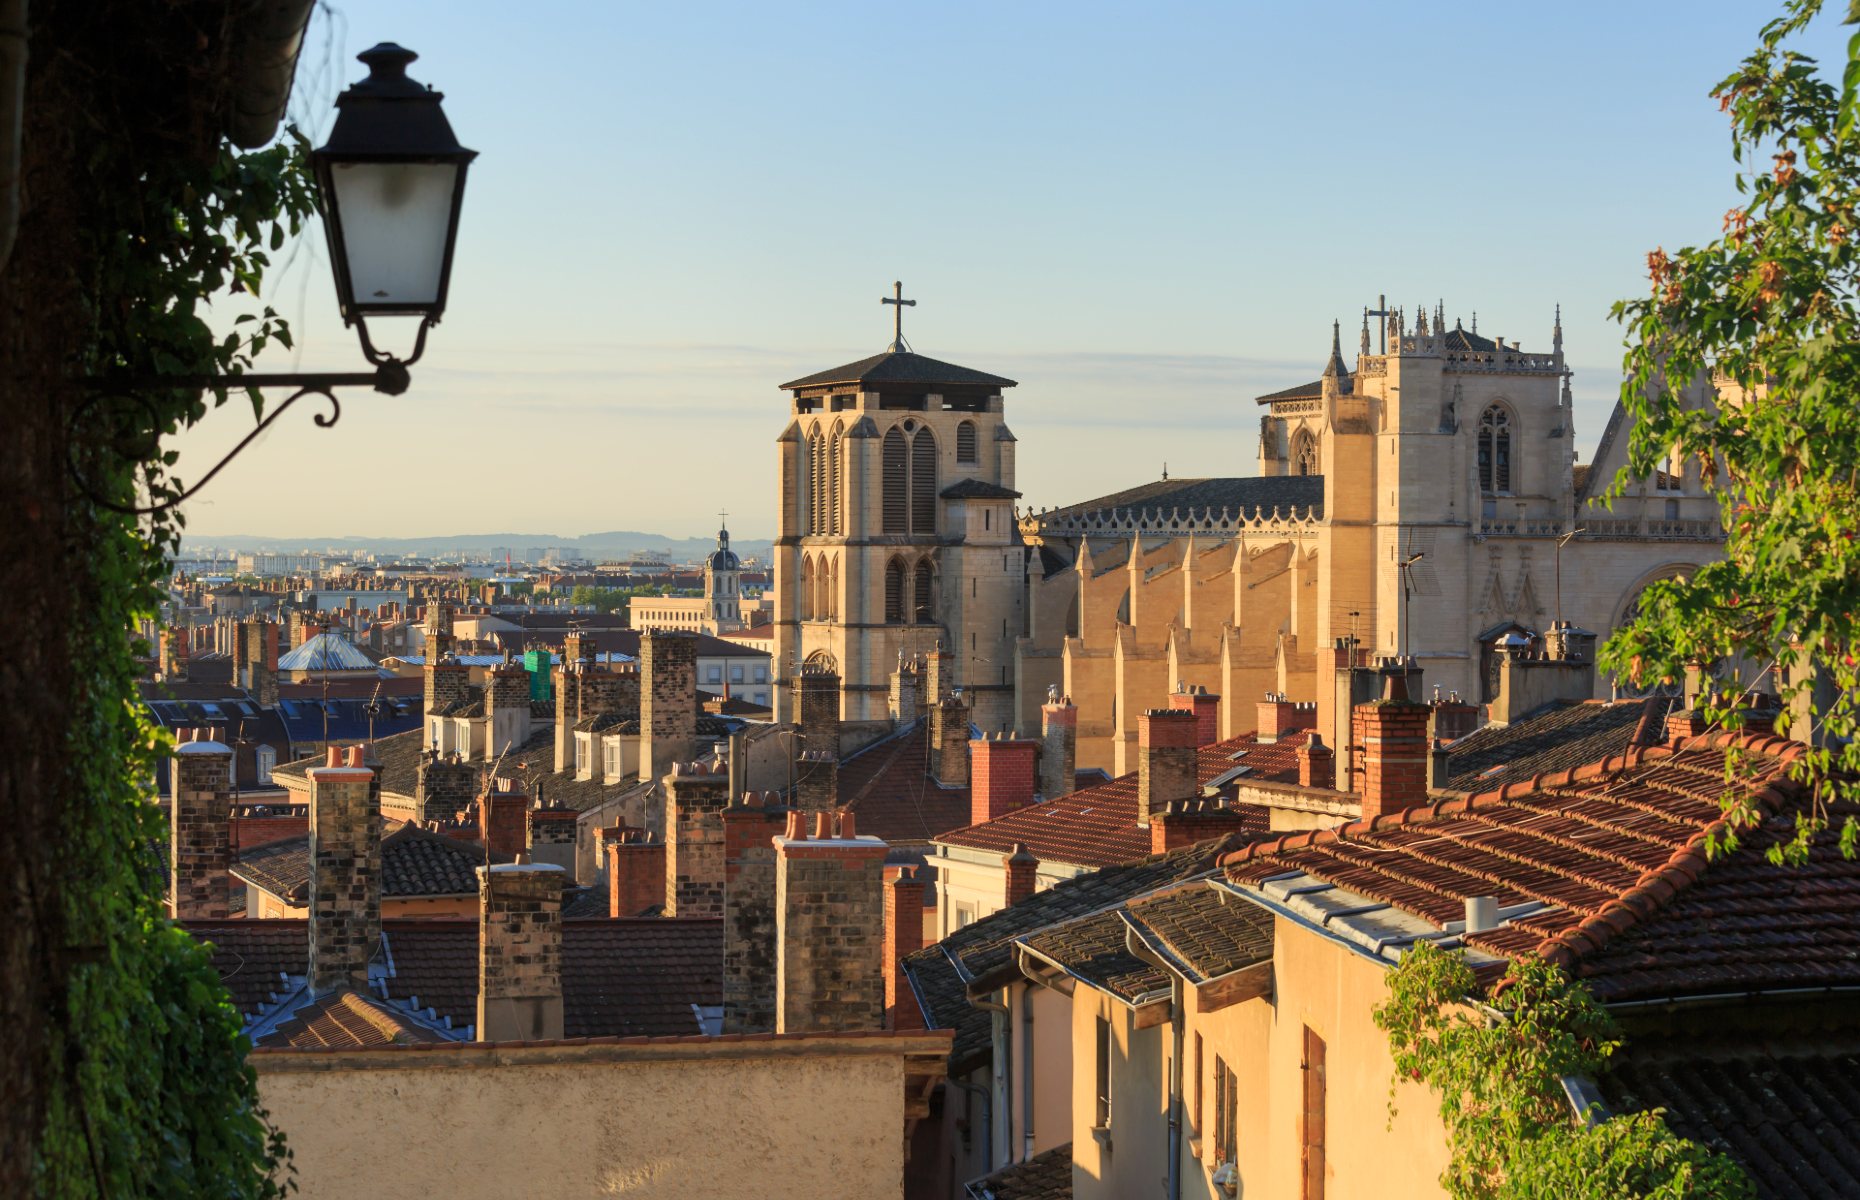 Vieux Lyon (Image: Sander van der Werf/Shutterstock)